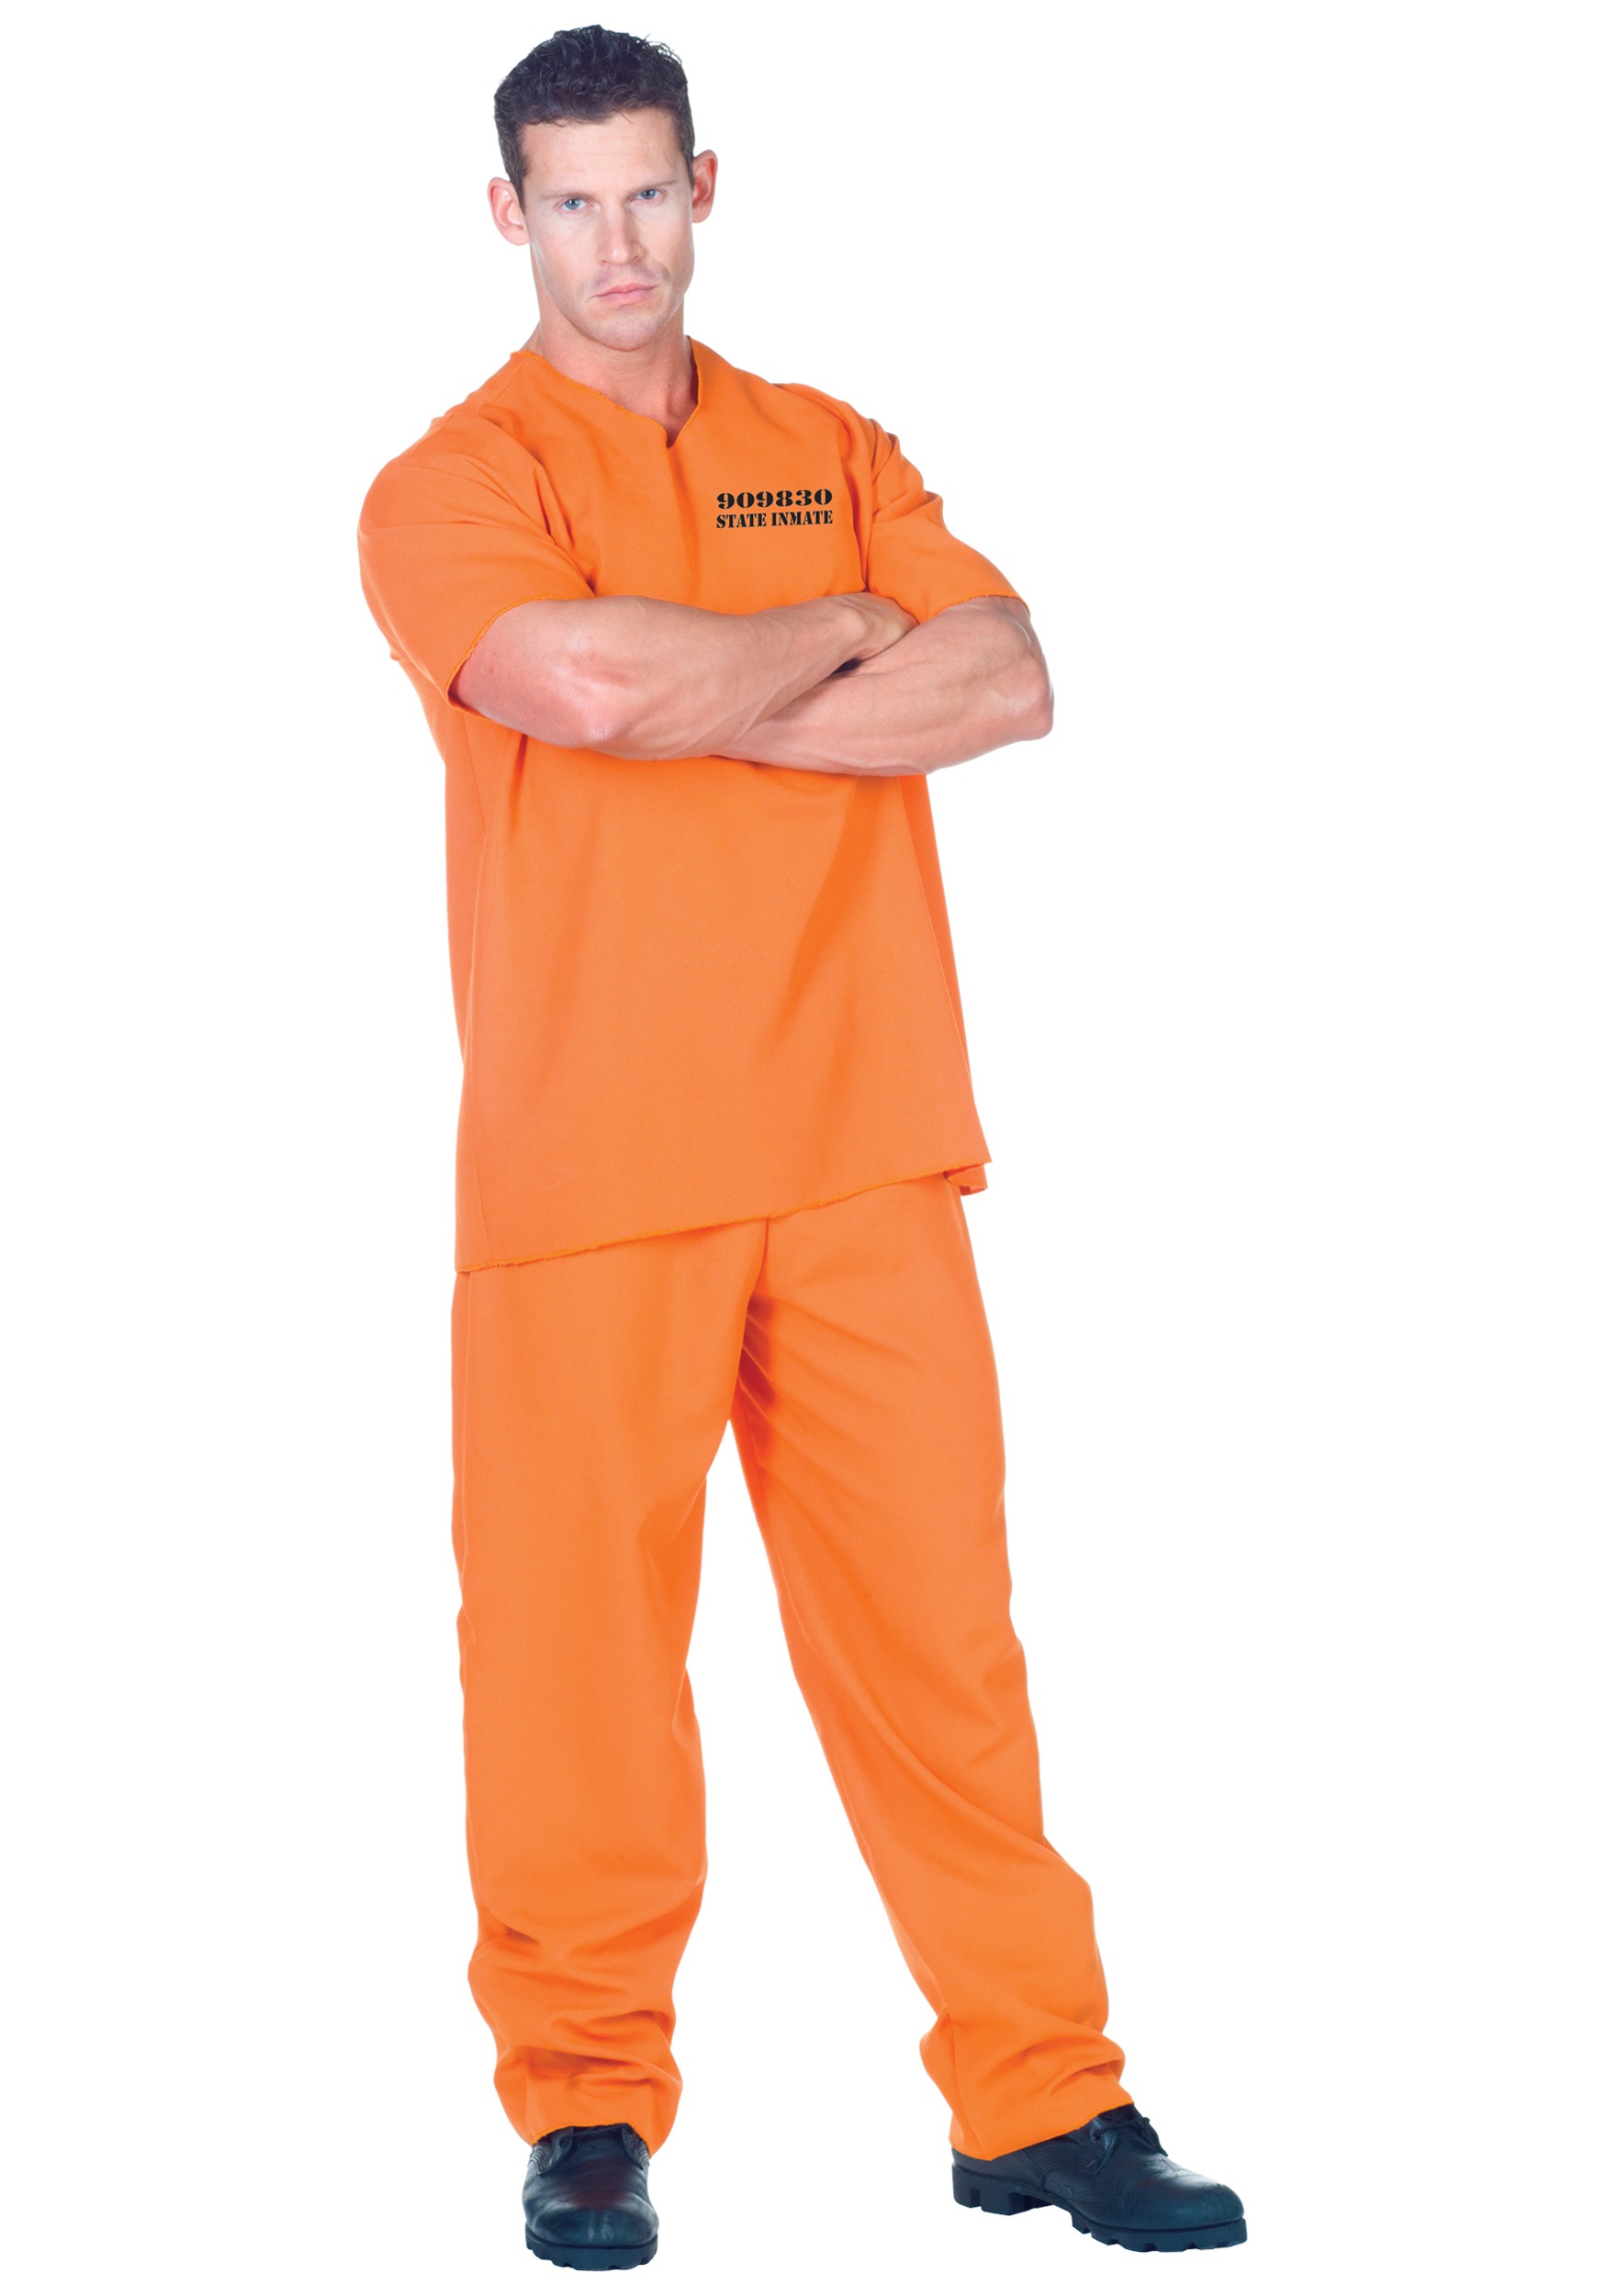 Plus Size Orange Jumpsuit Prisoner Costume